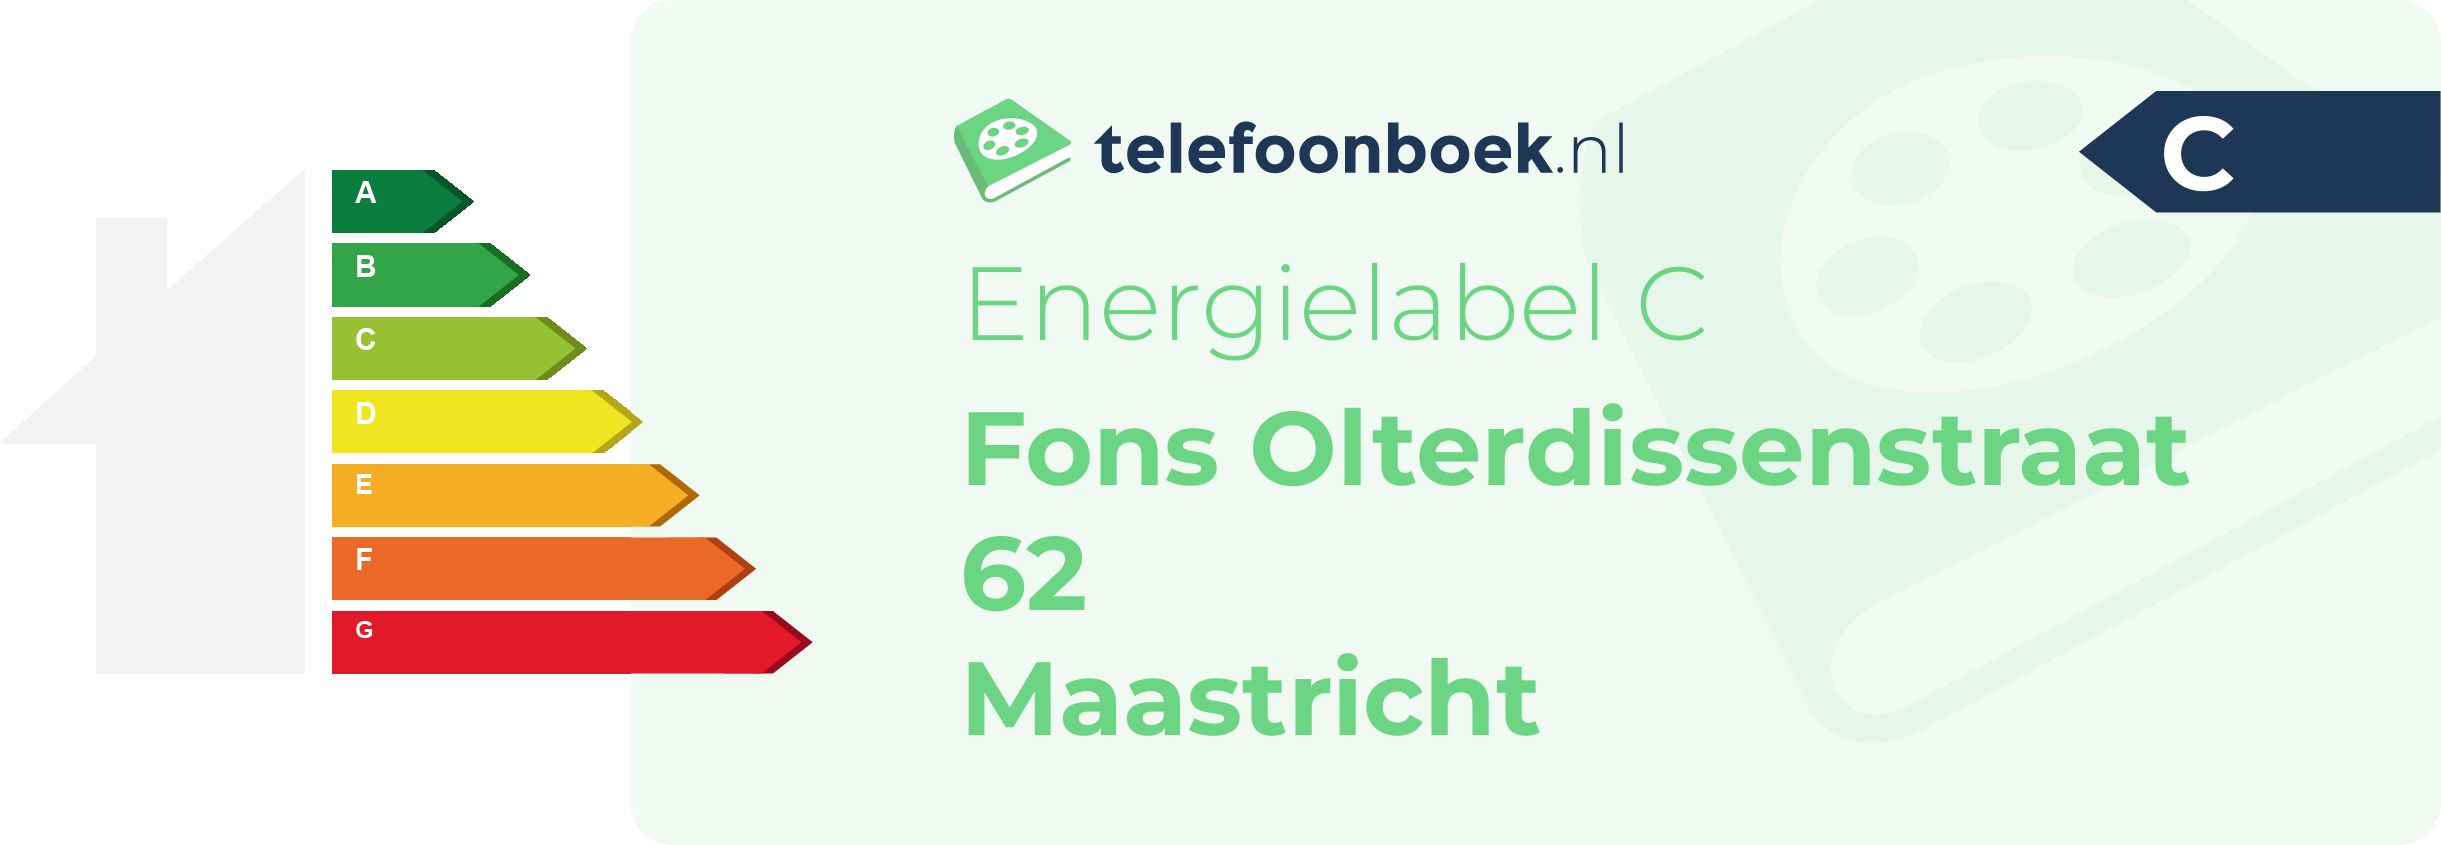 Energielabel Fons Olterdissenstraat 62 Maastricht